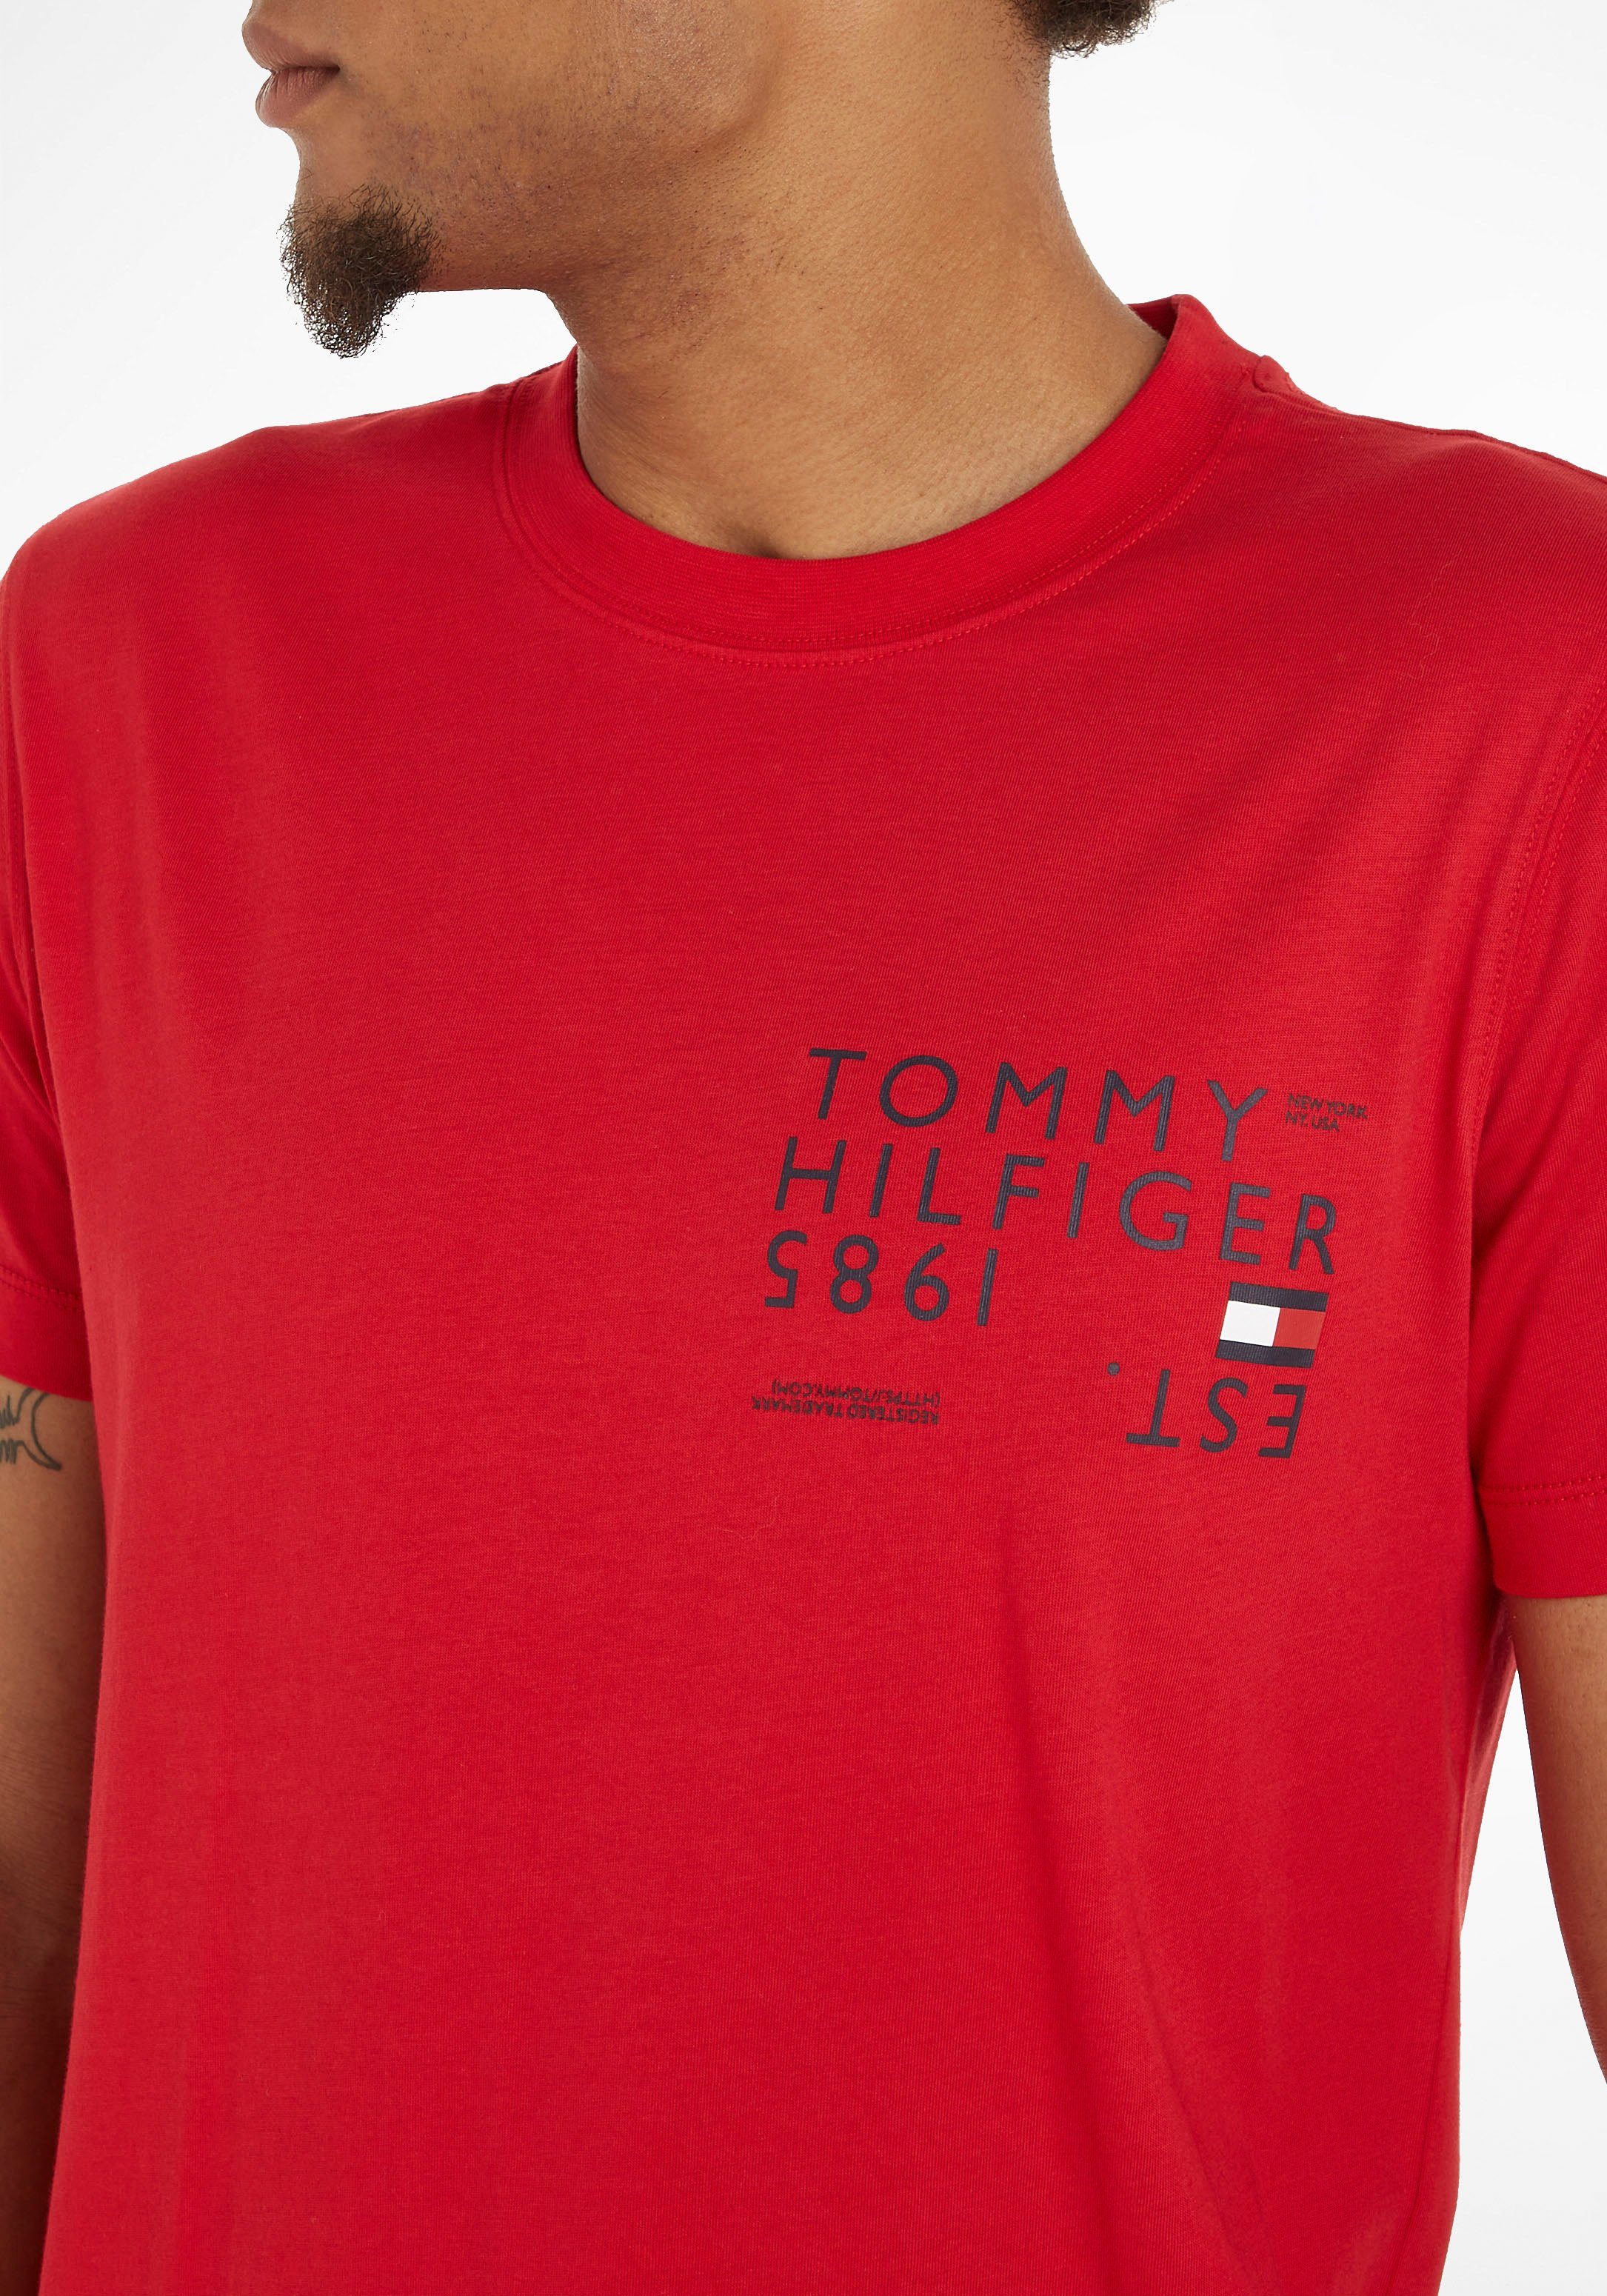 Tommy BACK Rundhalsshirt Primary Rücken Red Hilfiger BRAND auf dem TEE TH-Aufdruck LOVE mit großem